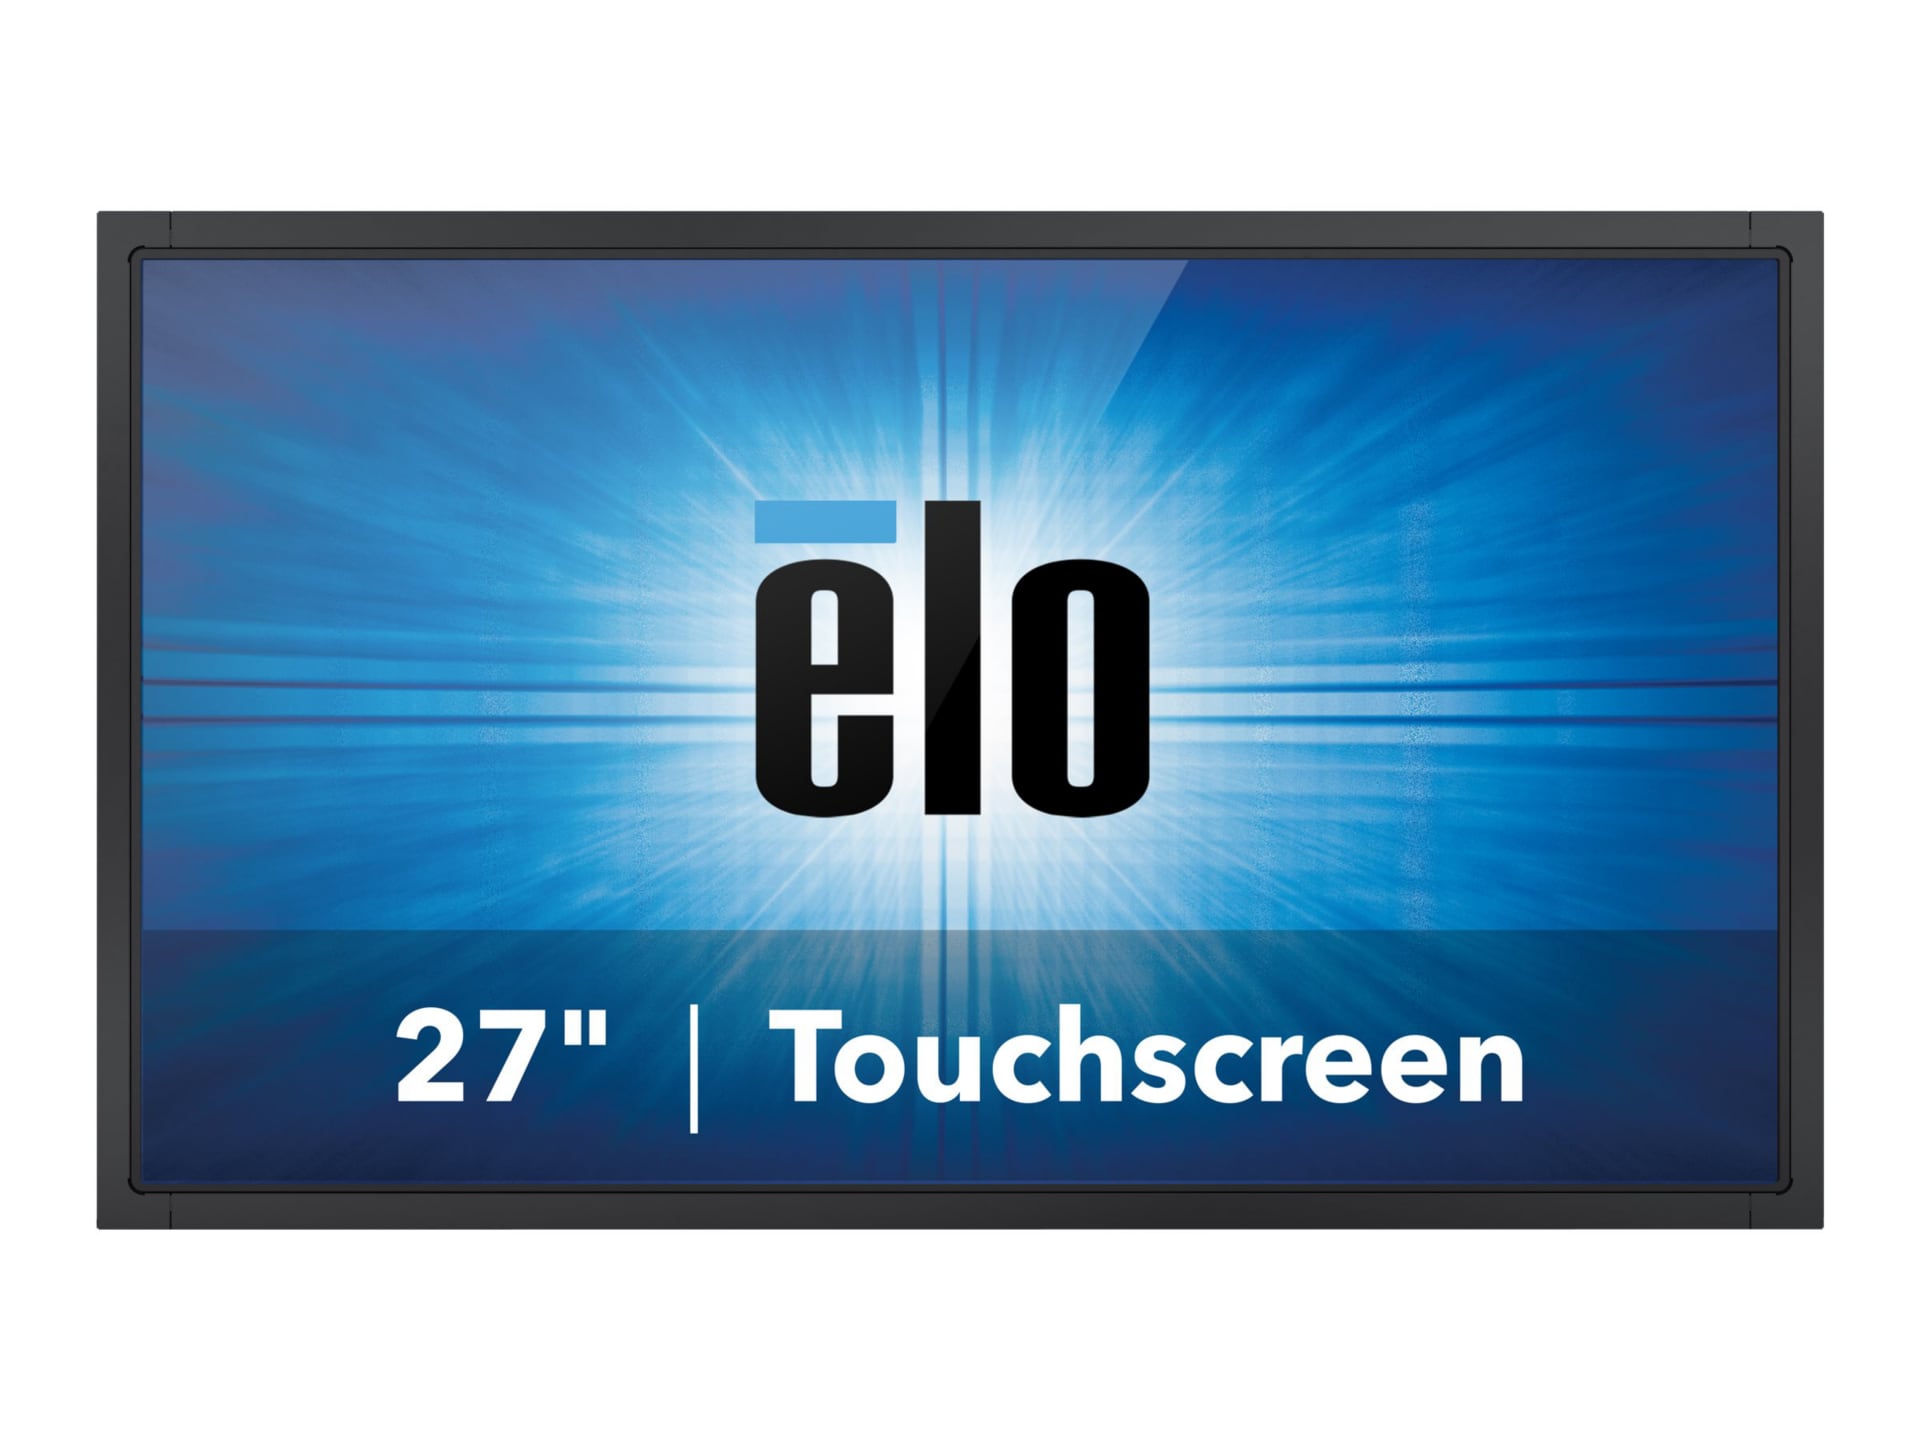 Elo 2794L - écran LED - Full HD (1080p) - 27"